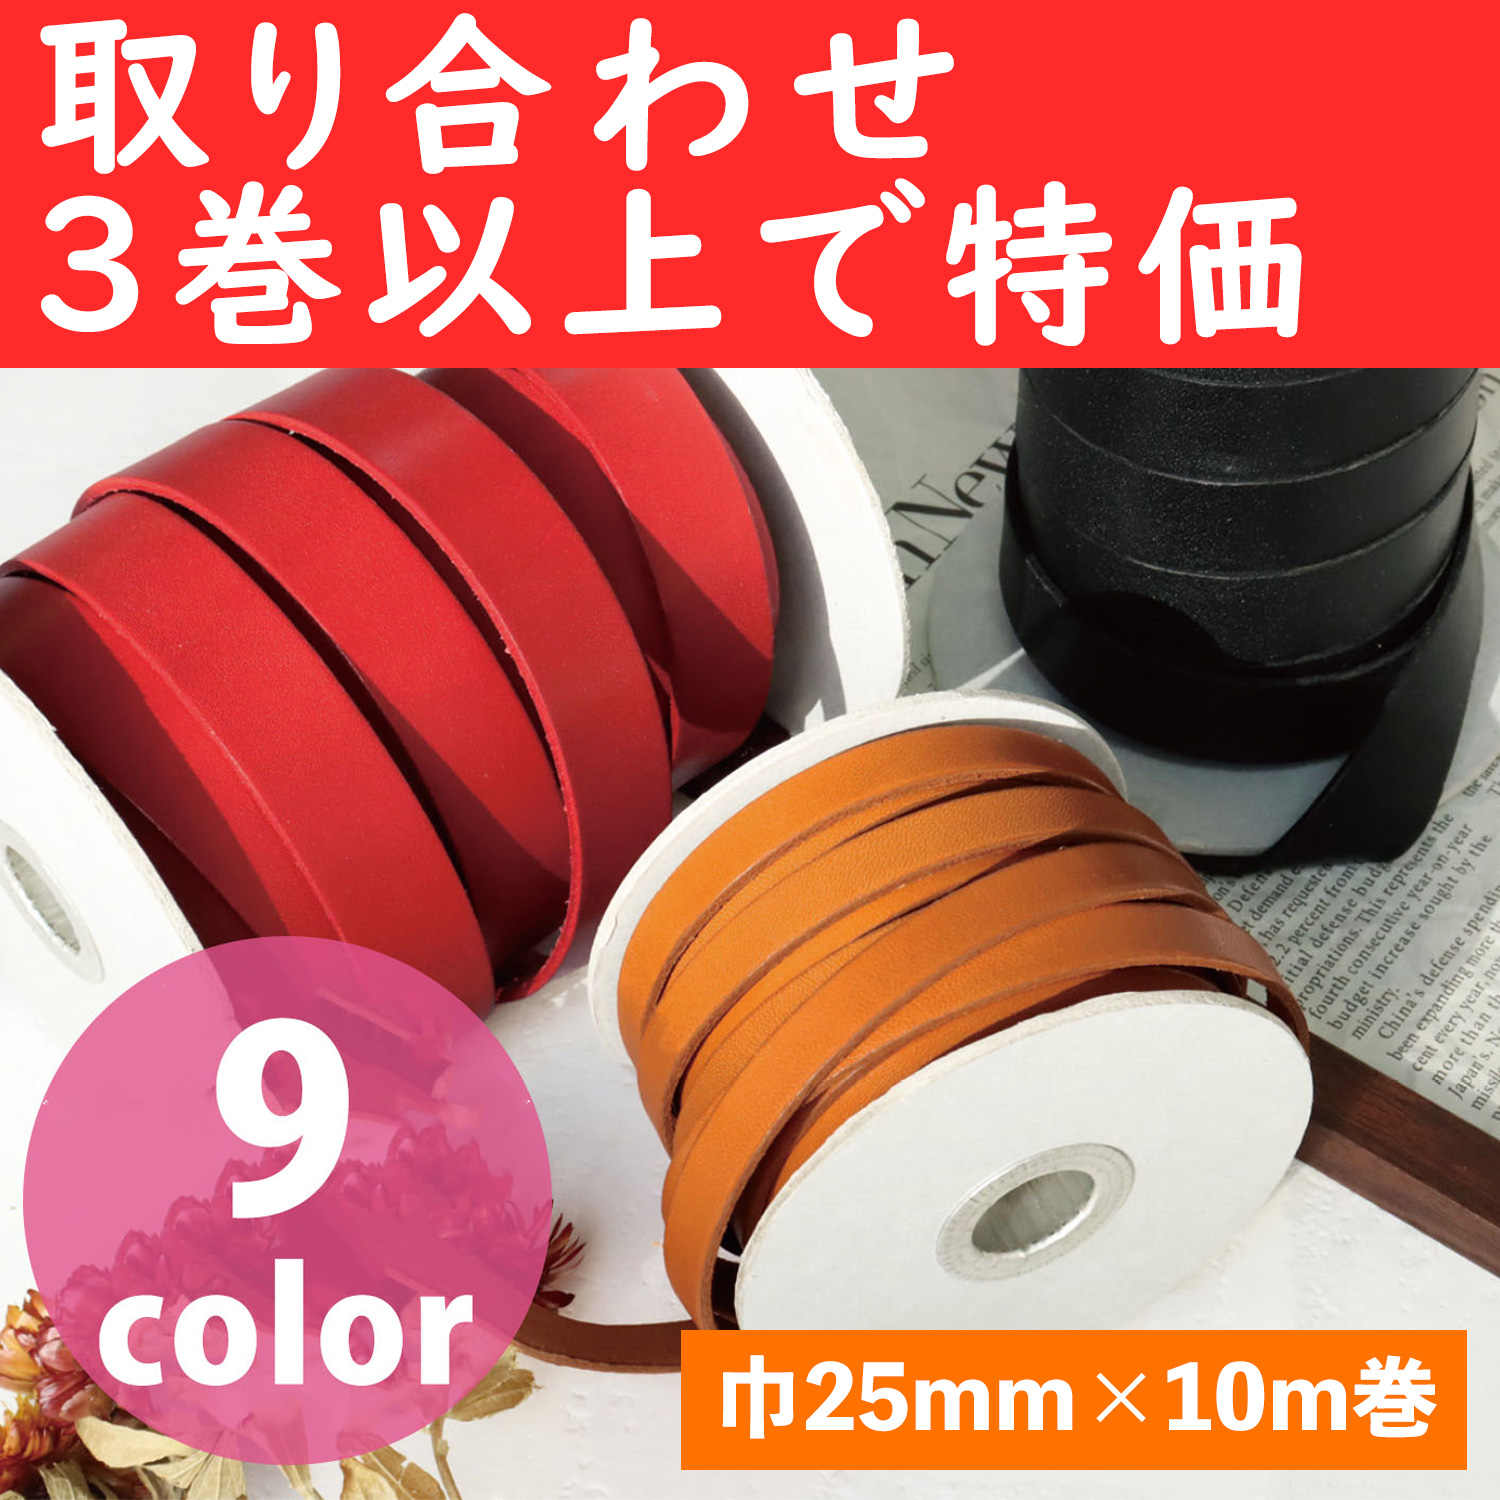 MTLS1025-OVER3 革テープ 巾約25mm×10m巻 色取り合わせ3巻以上 (巻)